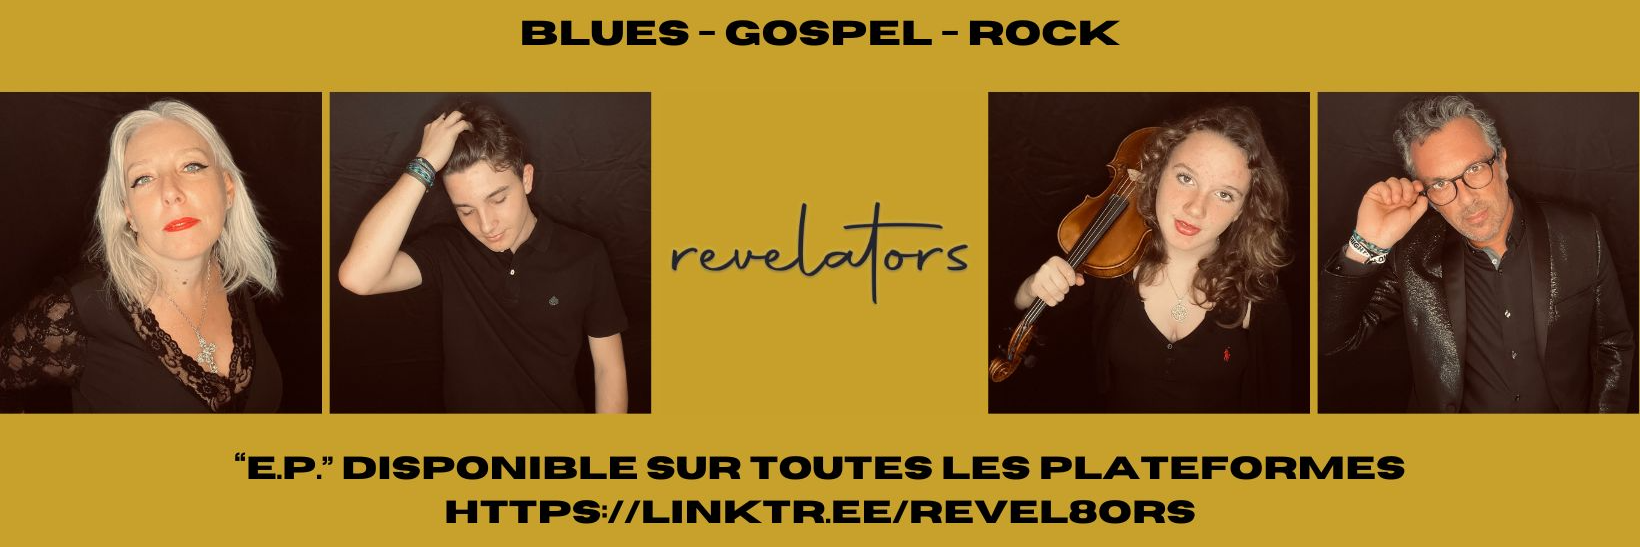 REVELATORS / GOSPEL ANGEL, groupe de musique Soul en représentation à Haute Savoie - photo de couverture